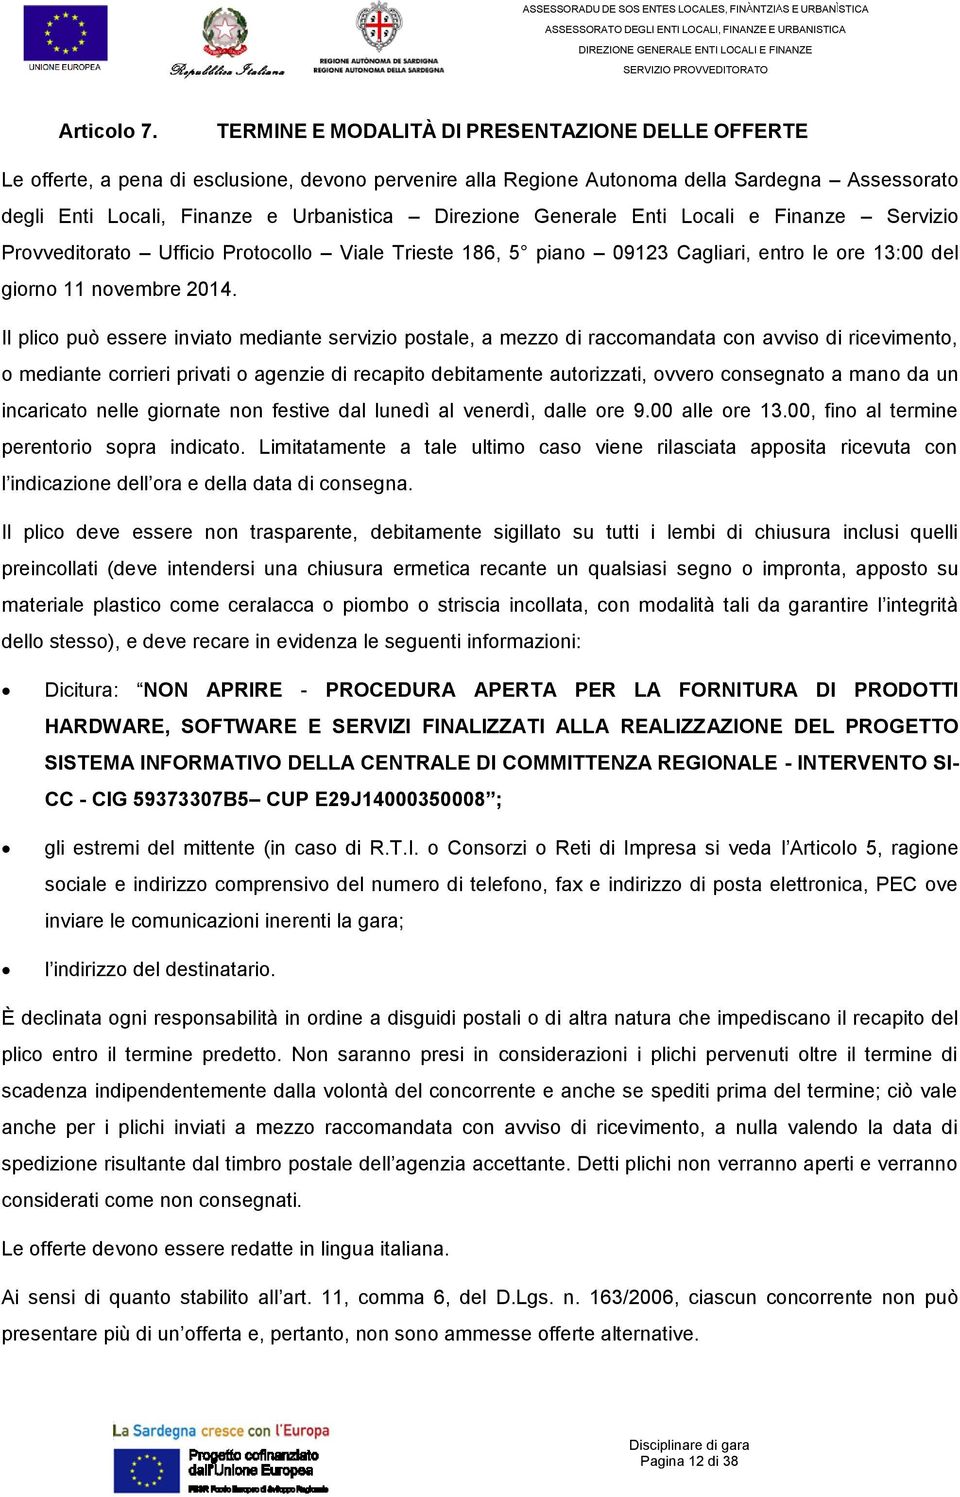 Direzione Generale Enti Locali e Finanze Servizio Provveditorato Ufficio Protocollo Viale Trieste 186, 5 piano 09123 Cagliari, entro le ore 13:00 del giorno 11 novembre 2014.